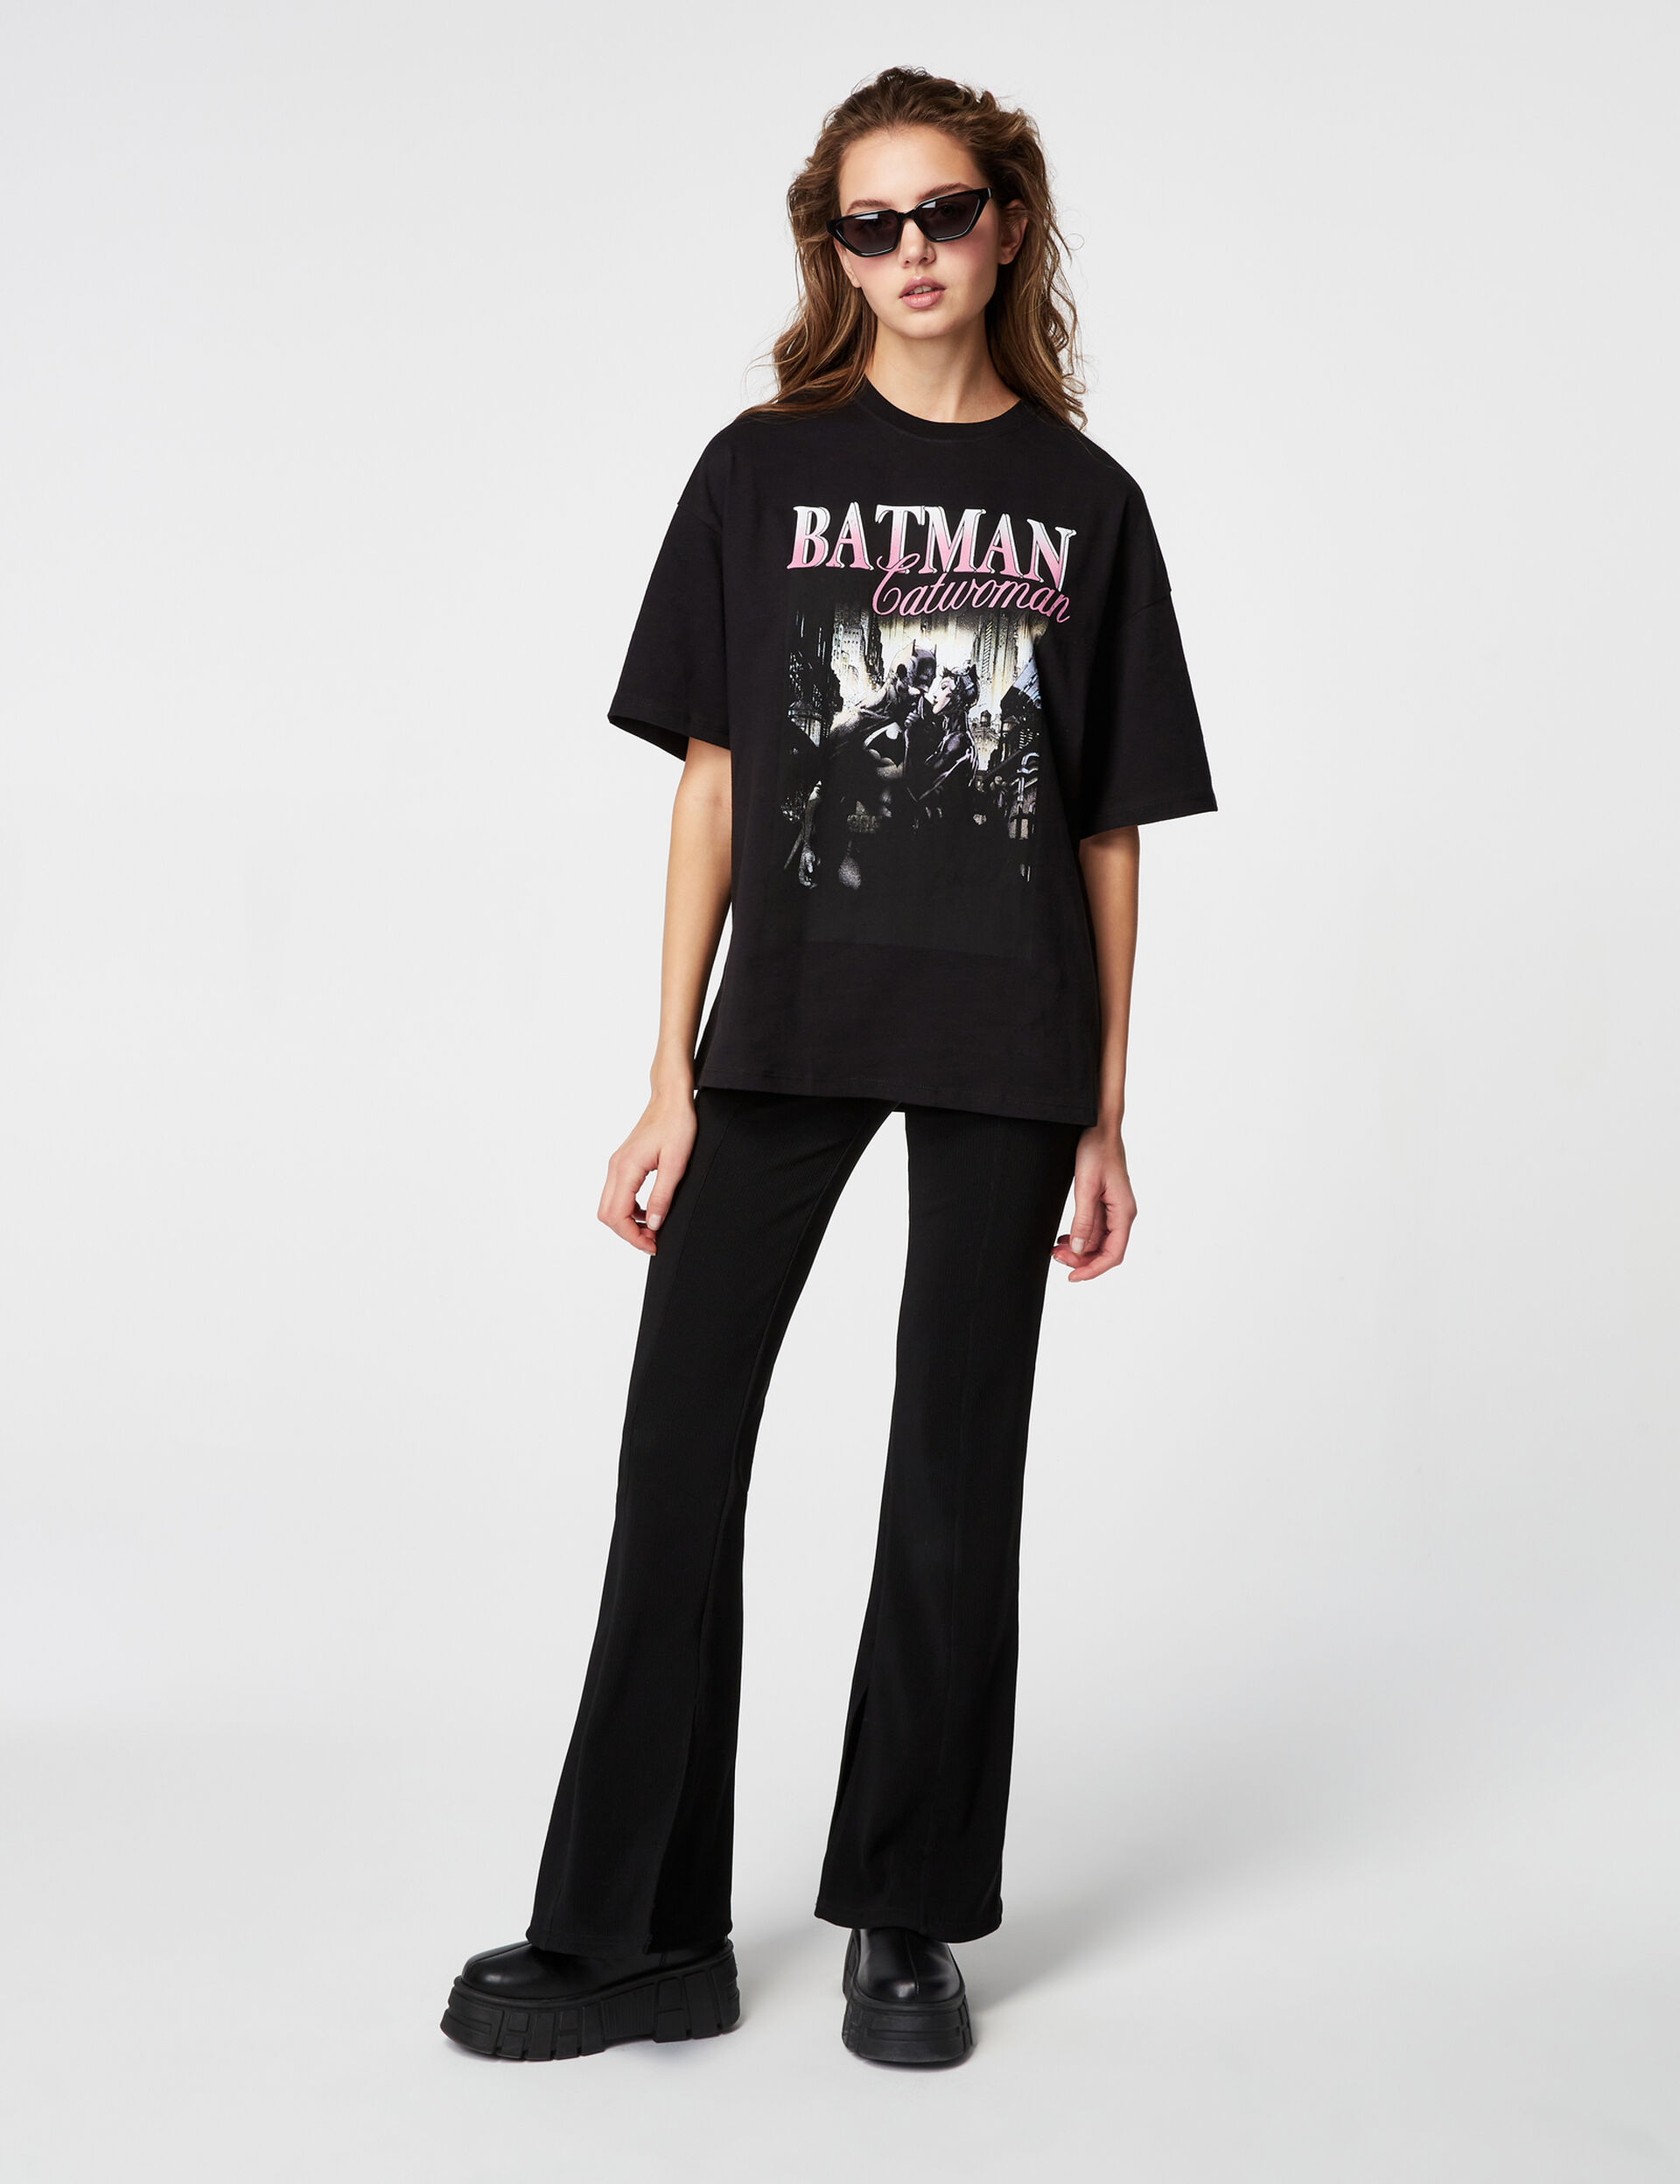 Batman Catwoman T-shirt